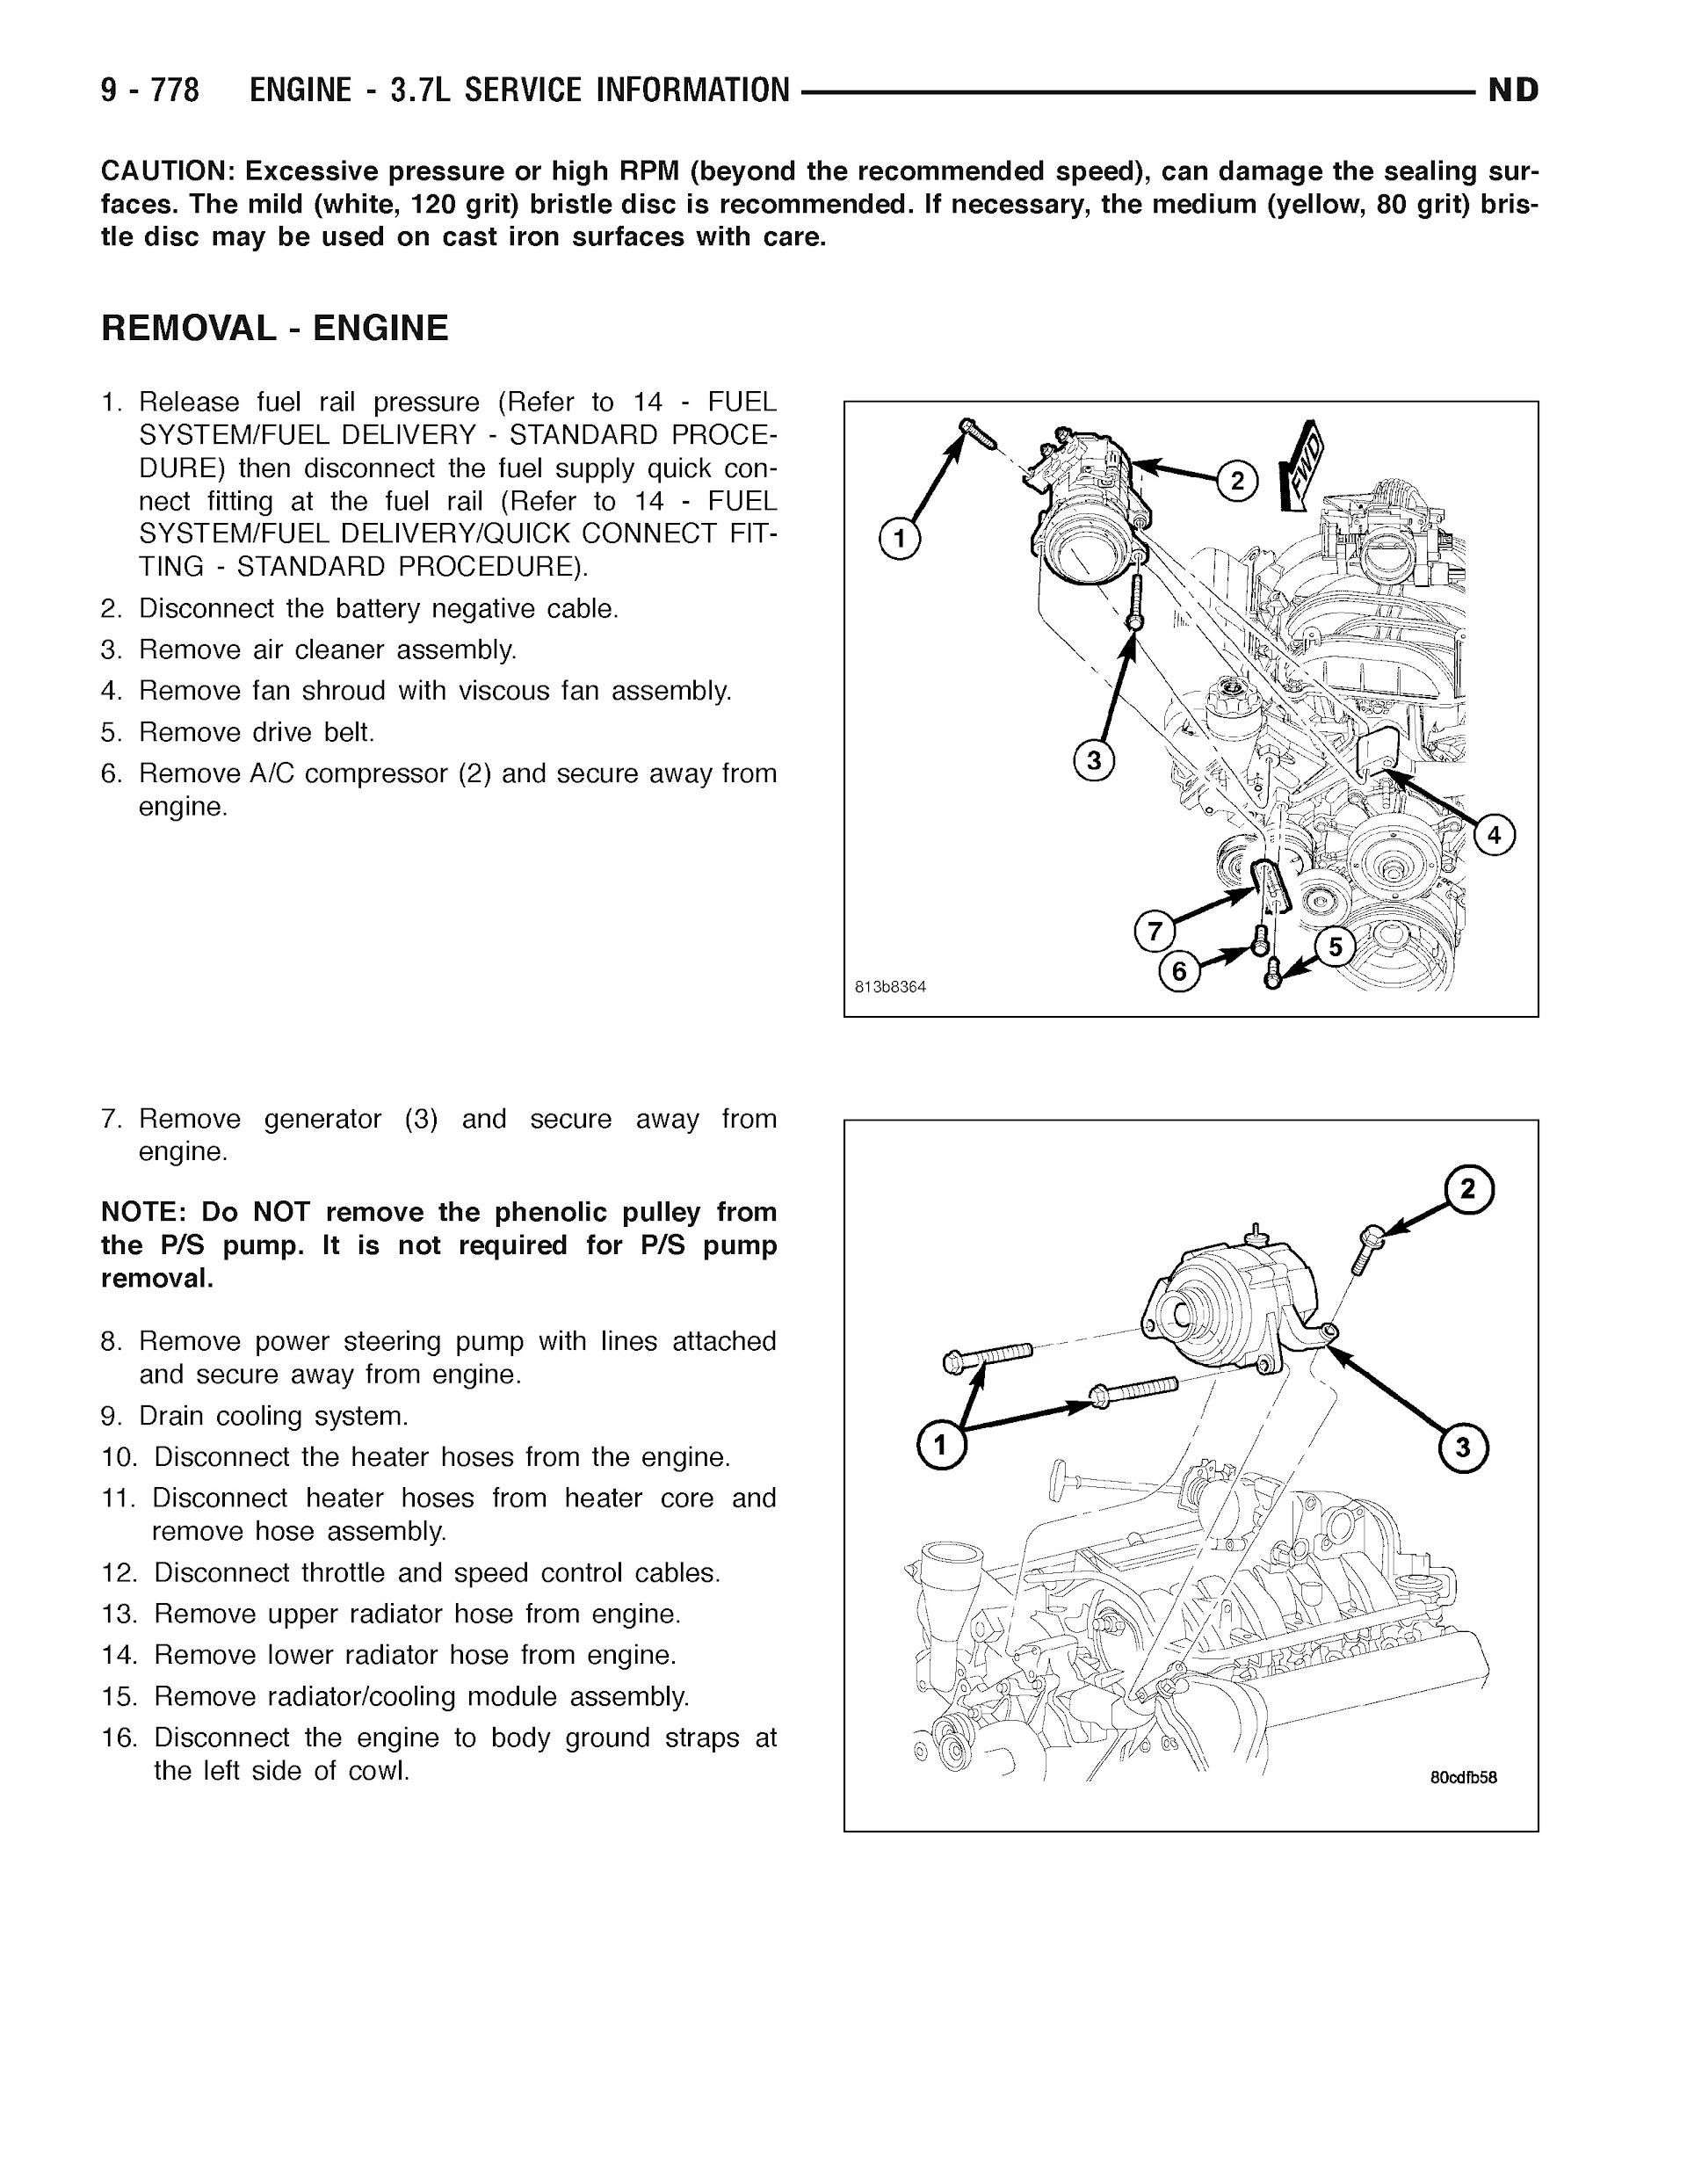 2005-2007 Dodge Dakota Repair Manual, Engine 3.7L